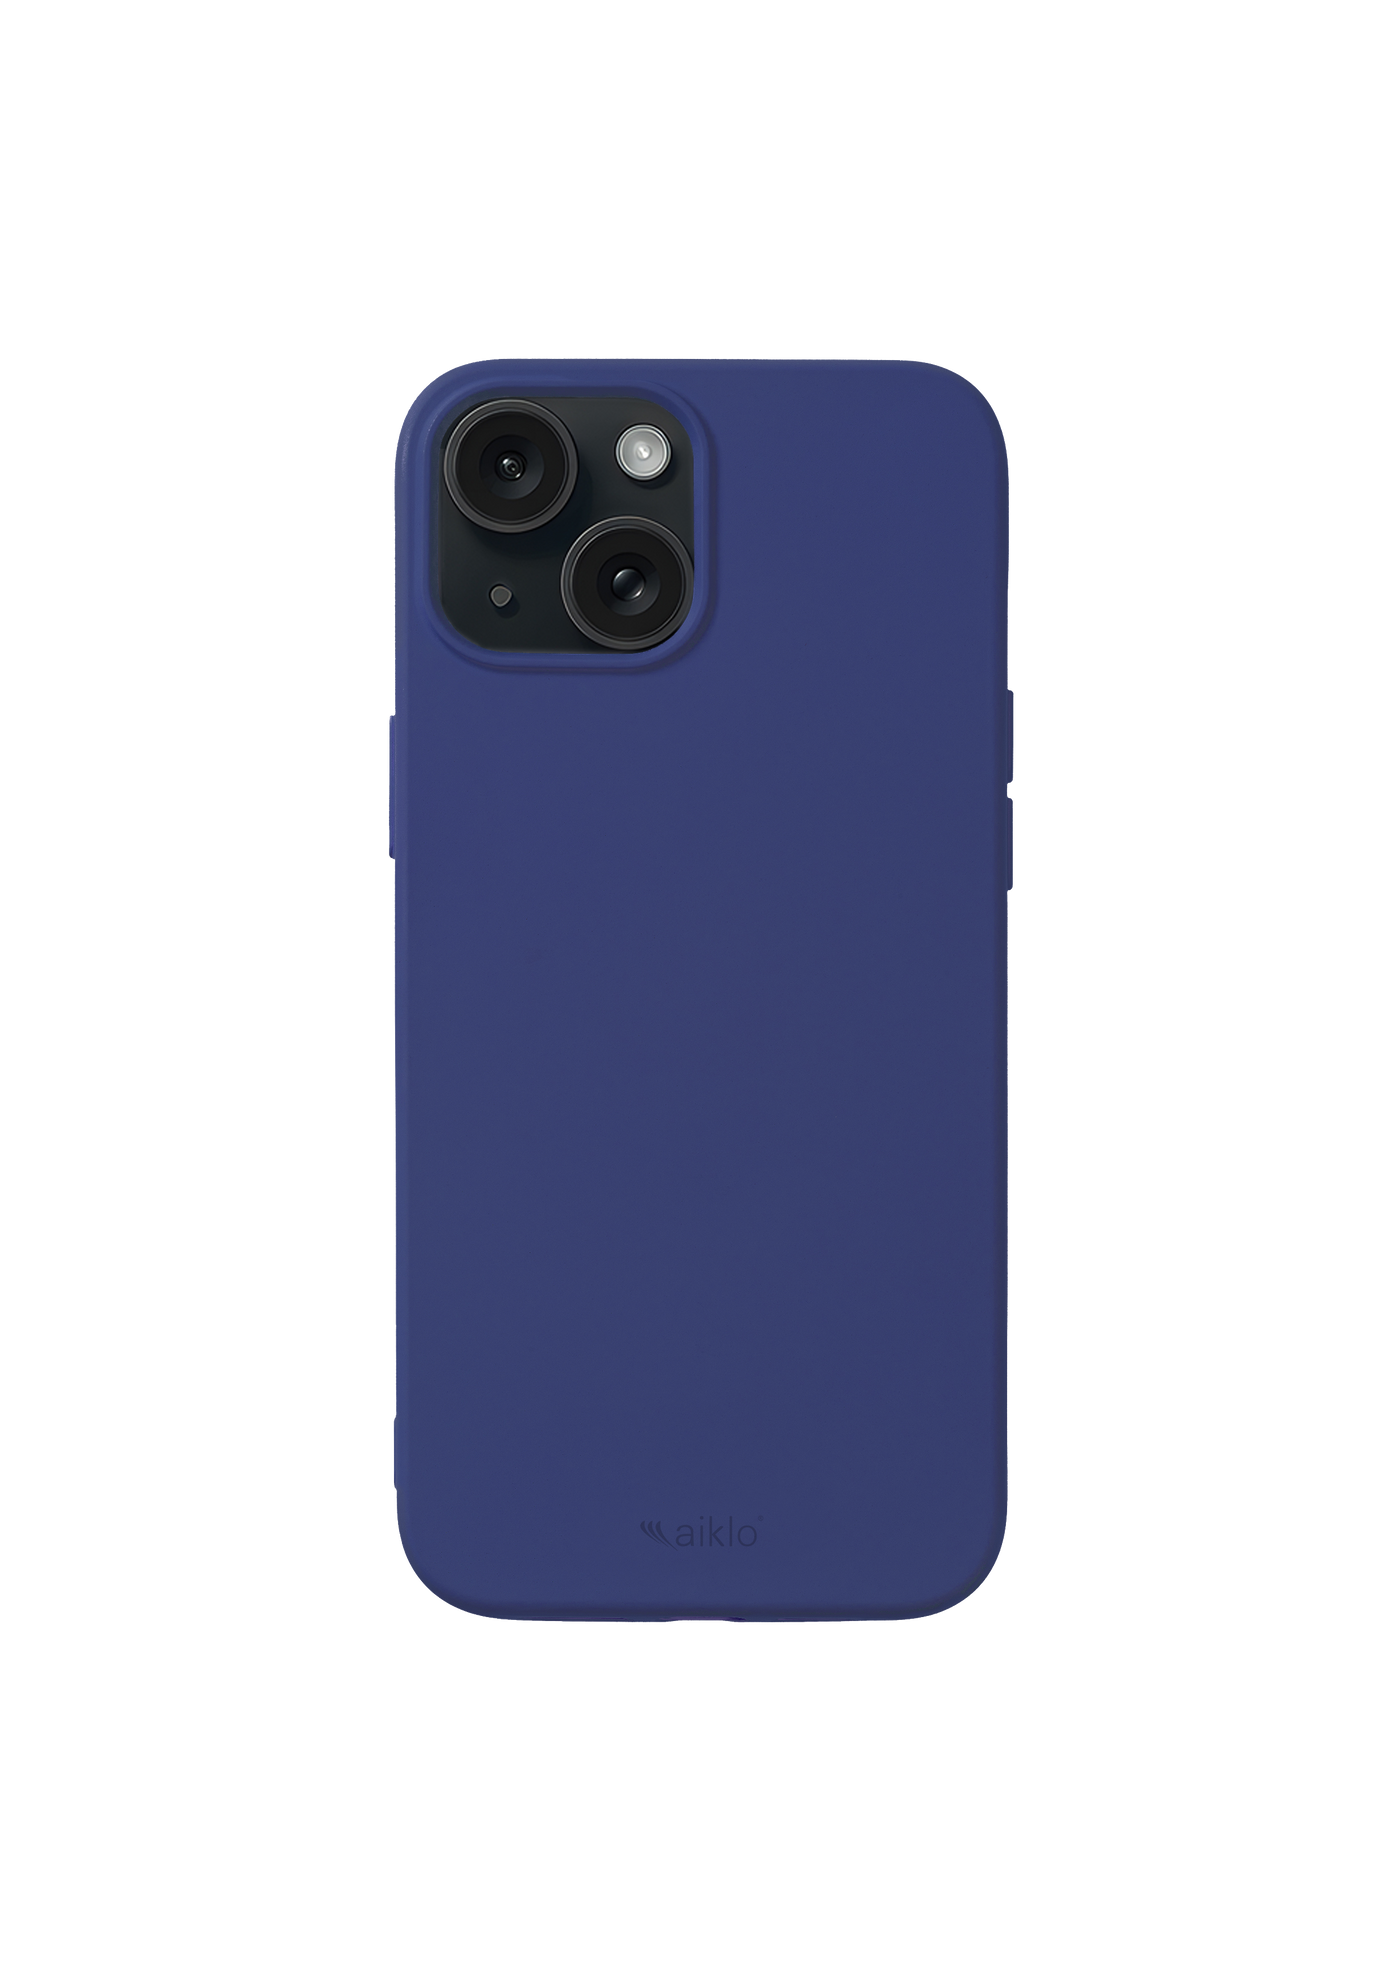 Funda iPhone Azul